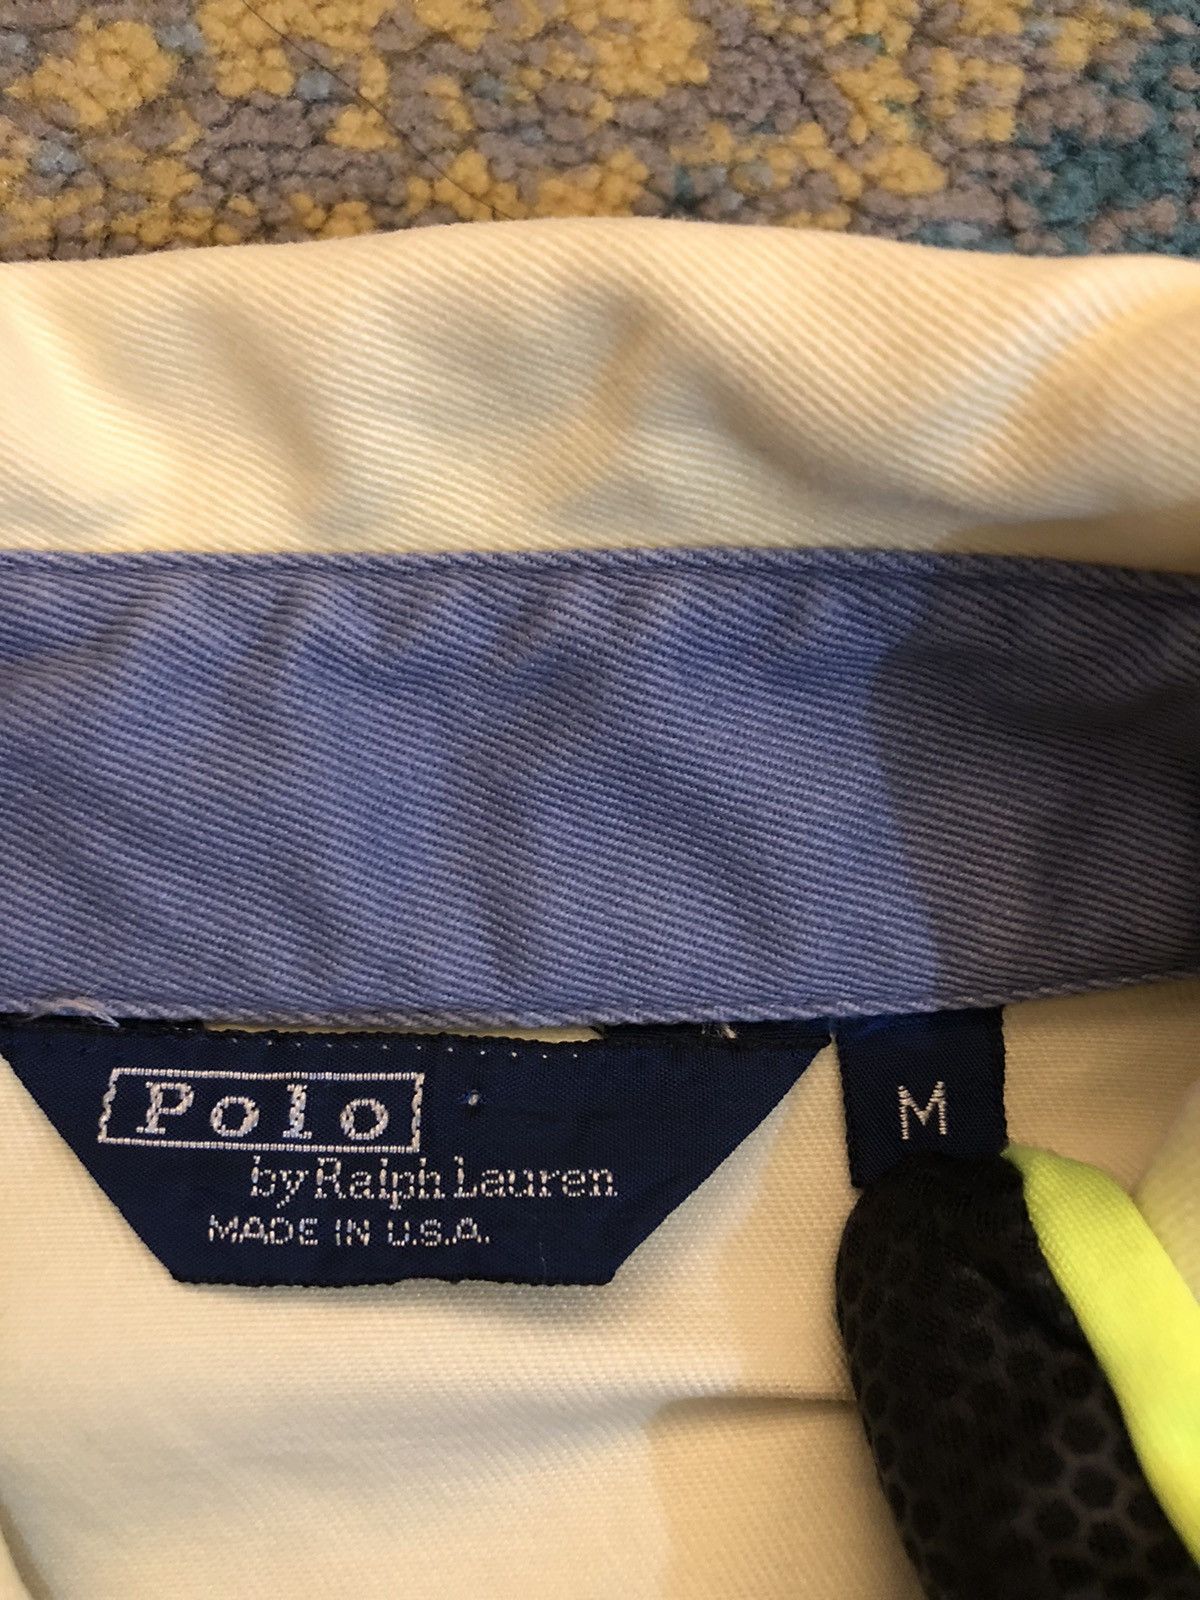 Polo Ralph Lauren - Polo jacket zipper up - 4